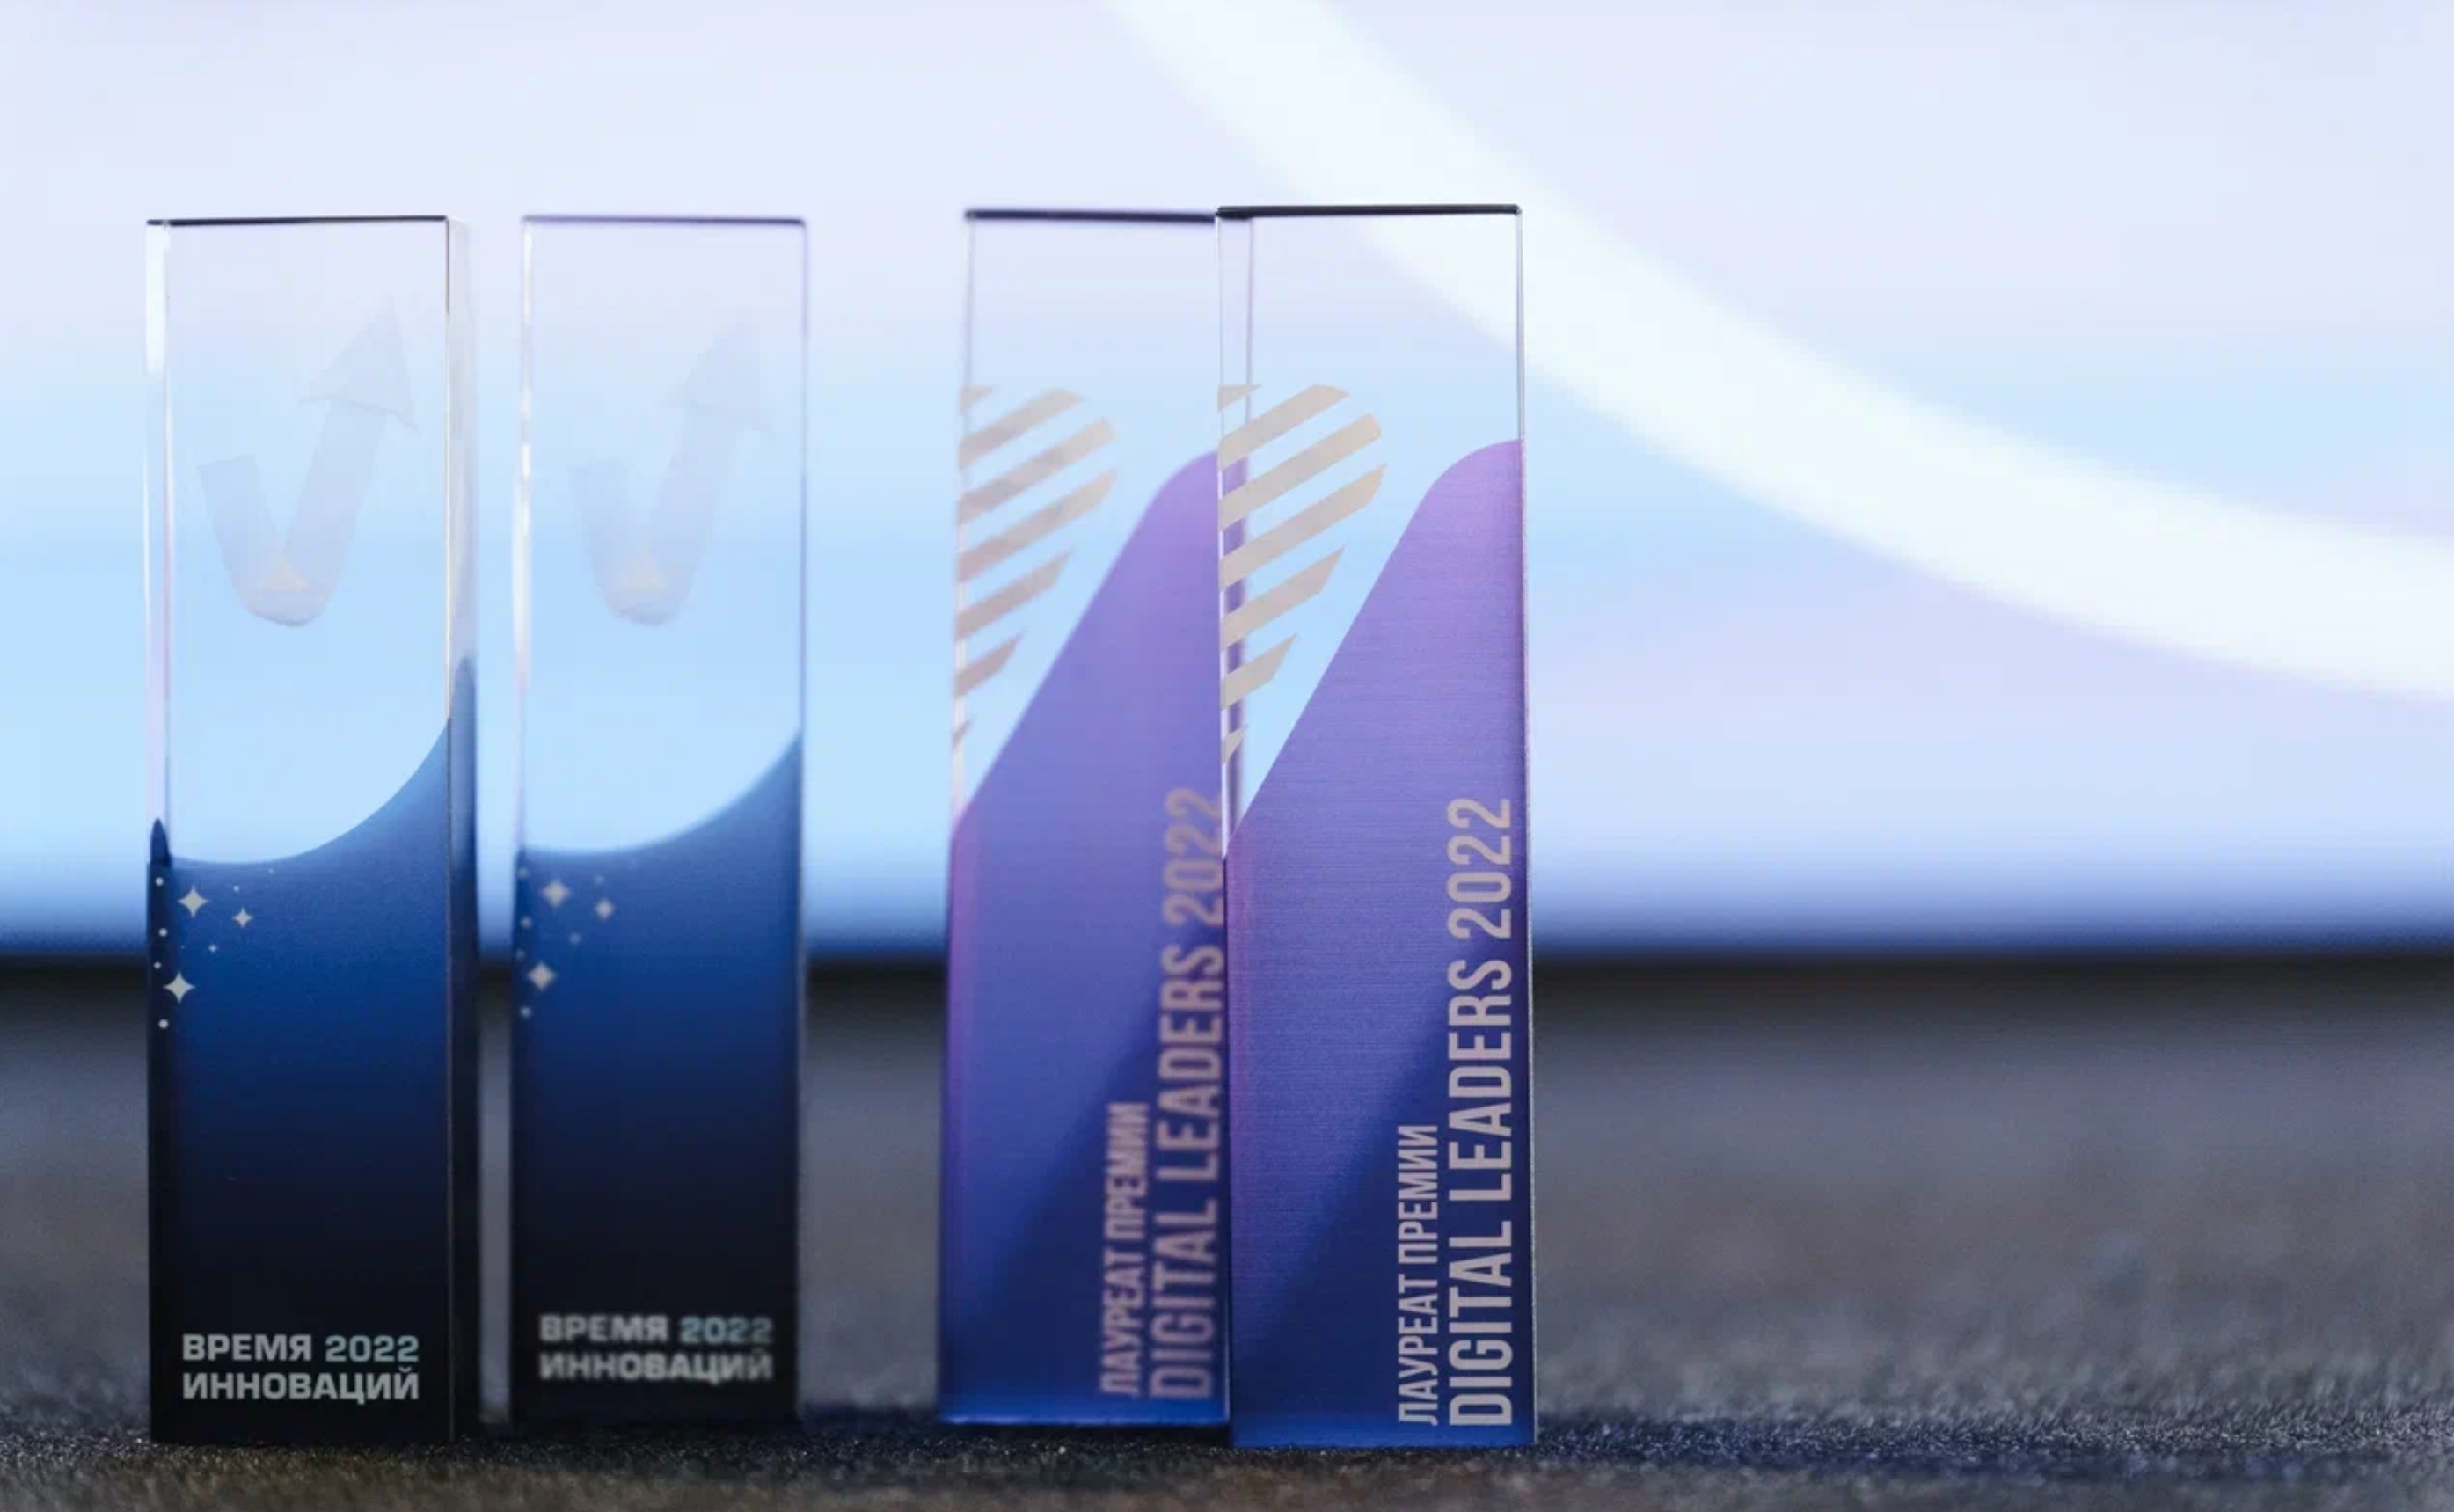 IDF Eurasia признана самой инновационной финансовой компанией в рамках премии «Время Инноваций»